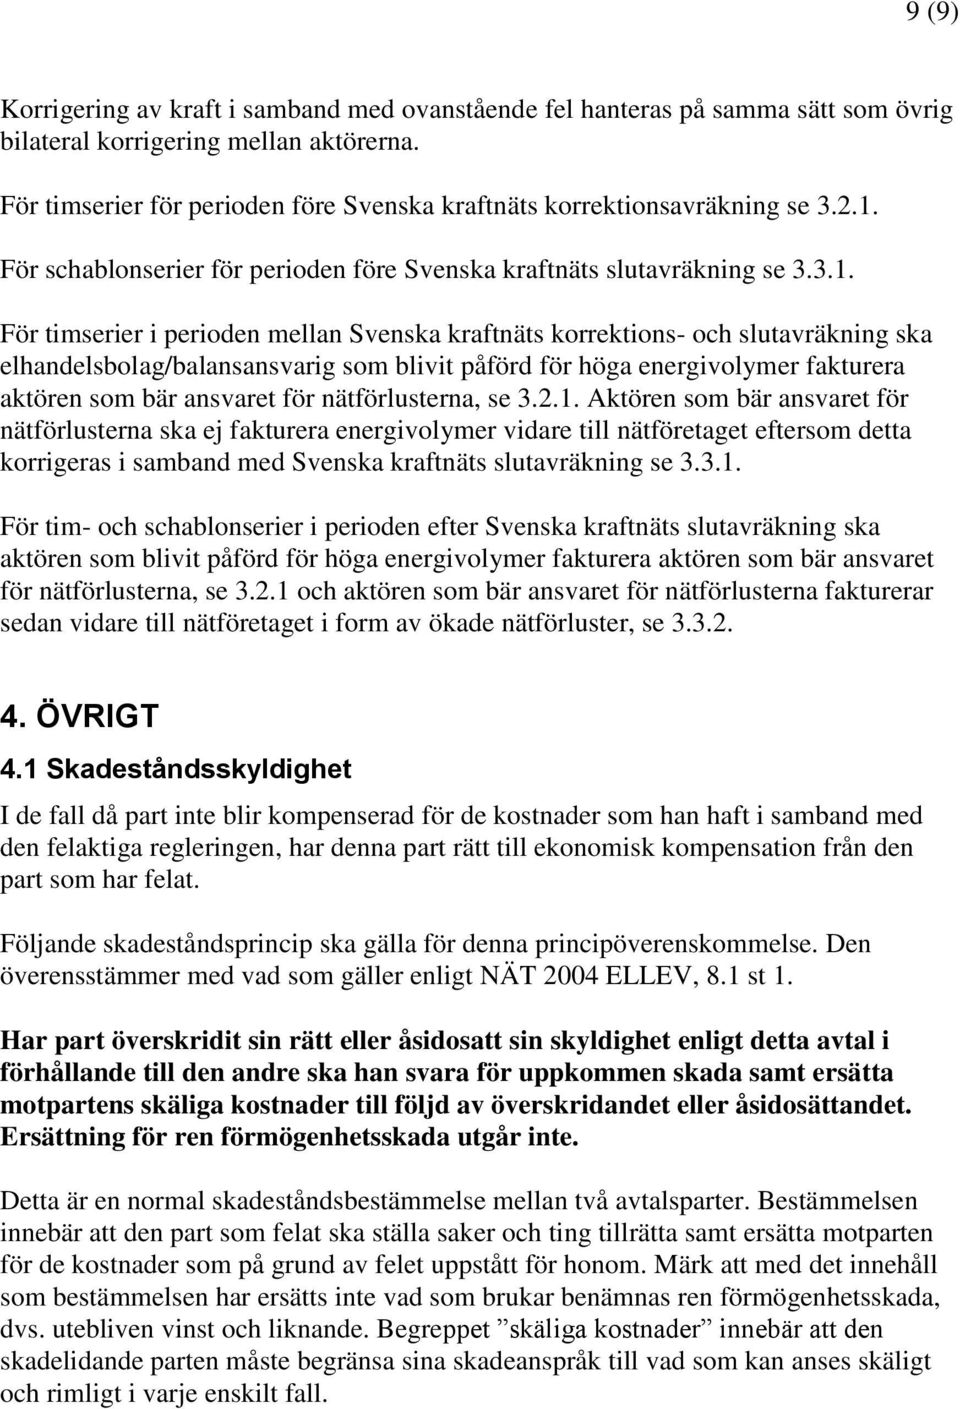 För schablonserier för perioden före Svenska kraftnäts slutavräkning se 3.3.1.